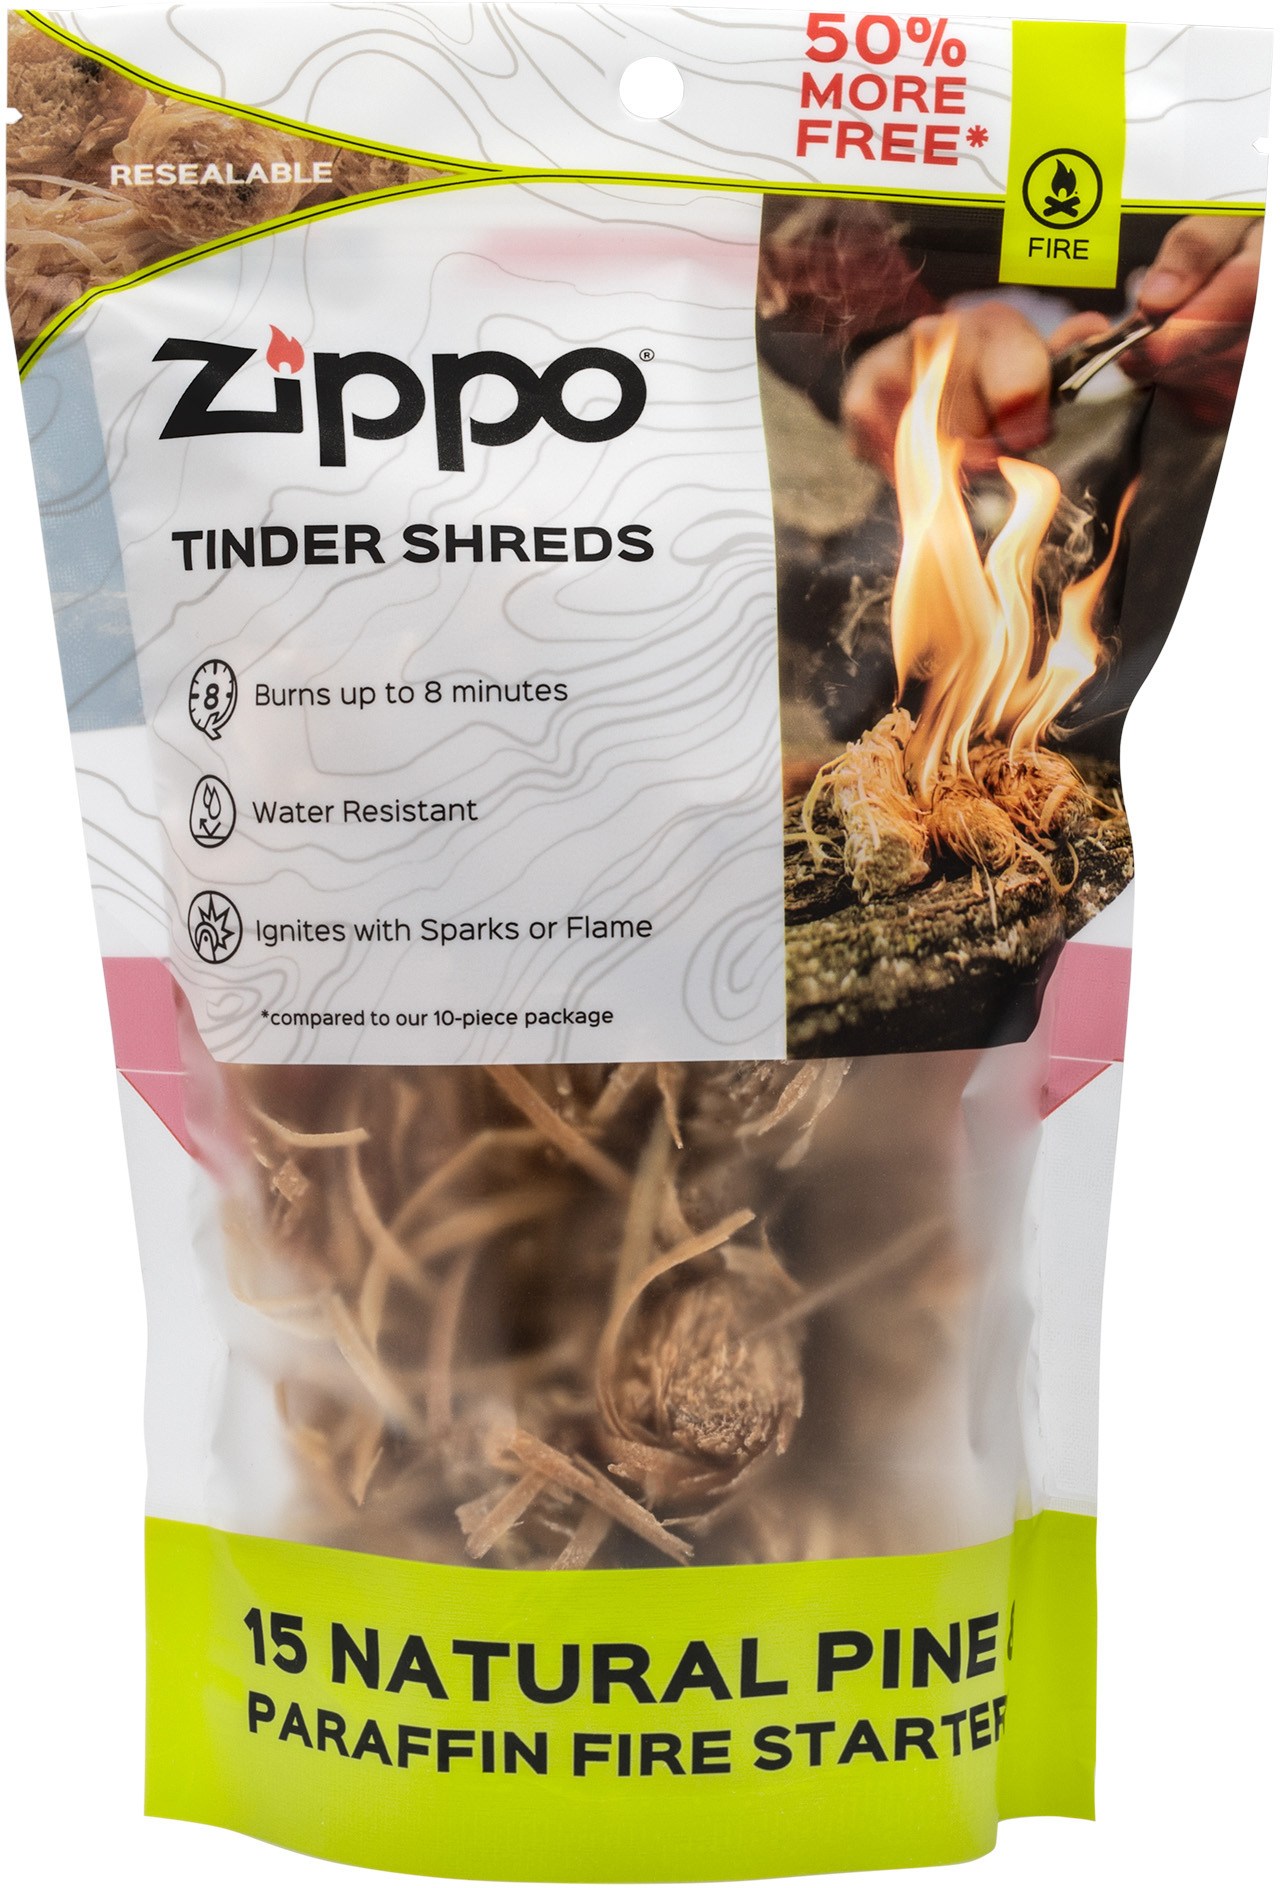 Огниво Tinder Shreds — упаковка из 15 шт. Zippo